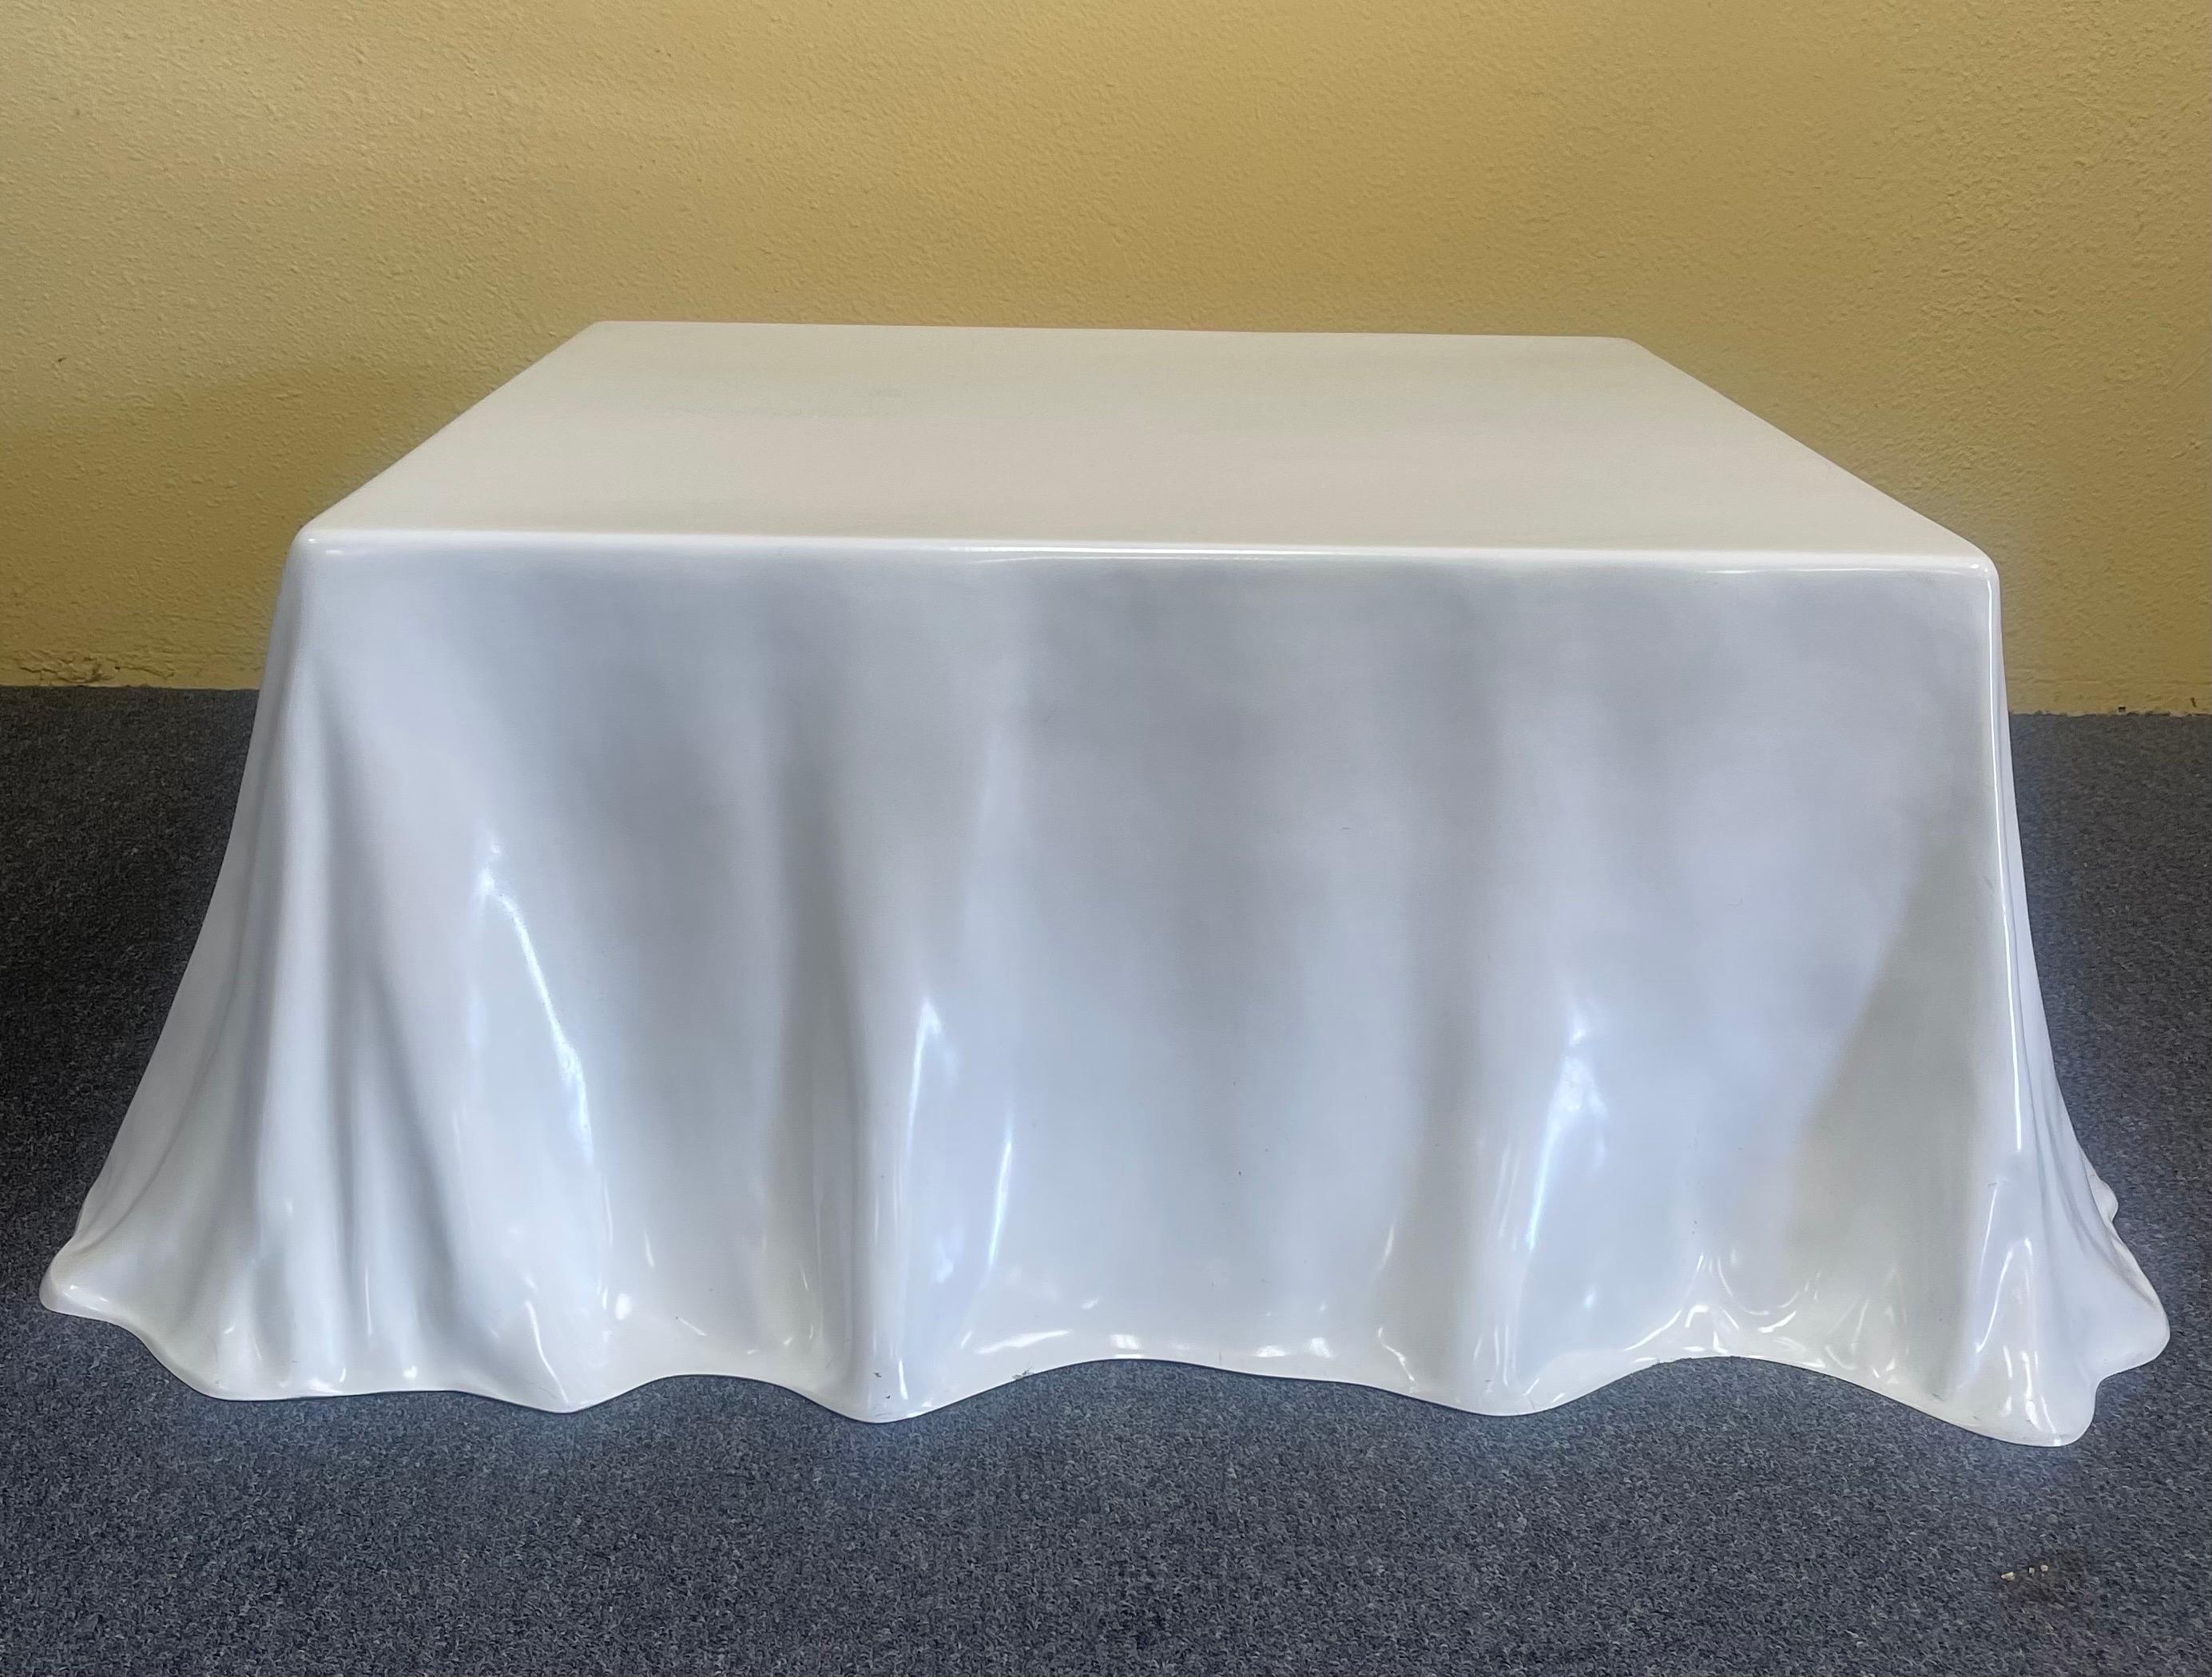 Rare Tovaglia / Tablecloth Coffee Table by Alberto Bazzani for Studio Tetrarch 1